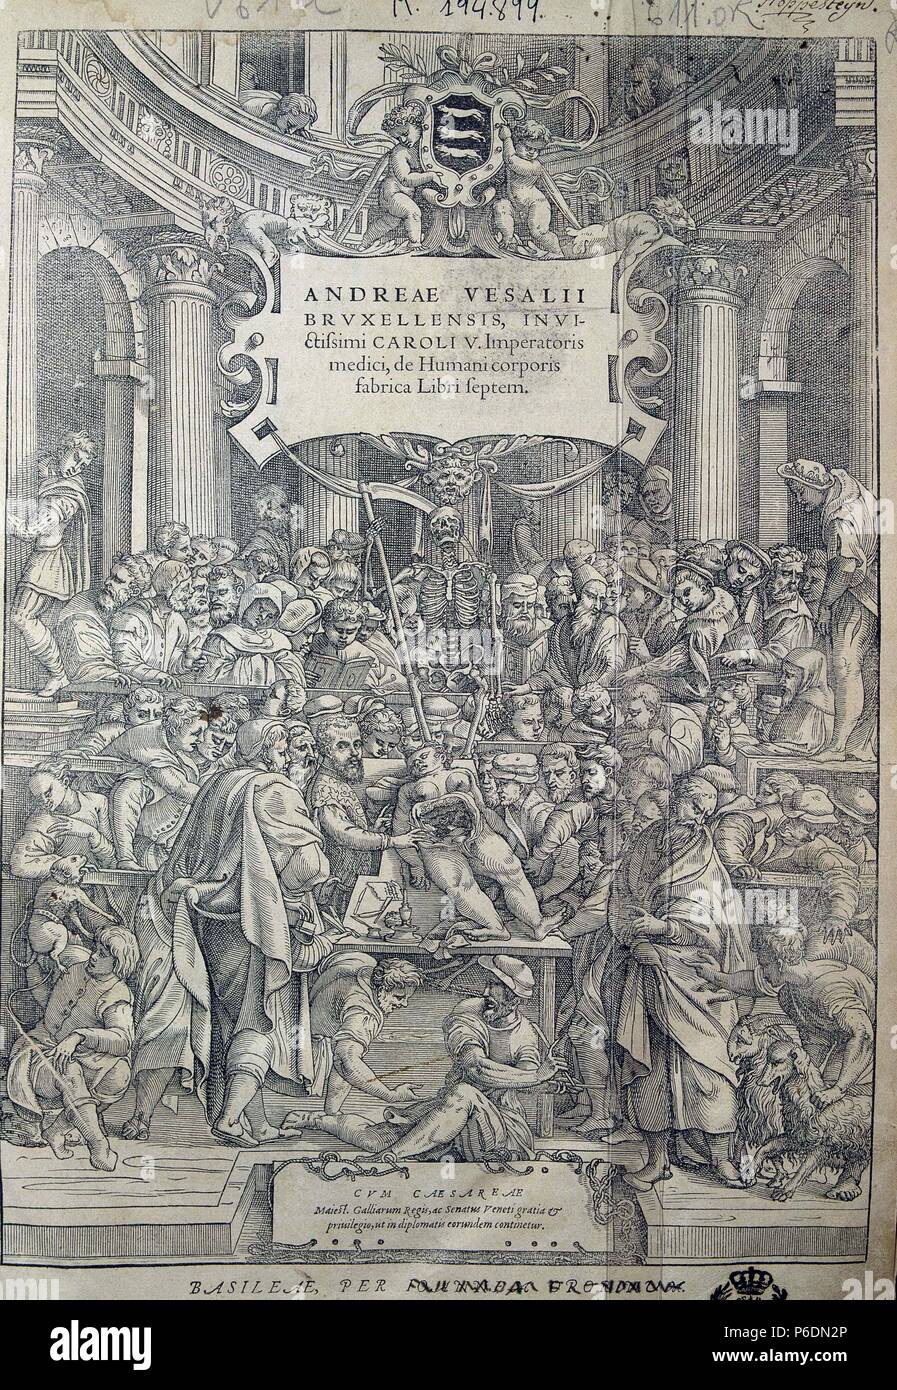 VESALIO , ANDRES. ANATOMISTA FLAMENCO. 1514 - 1564. PORTADA DE 